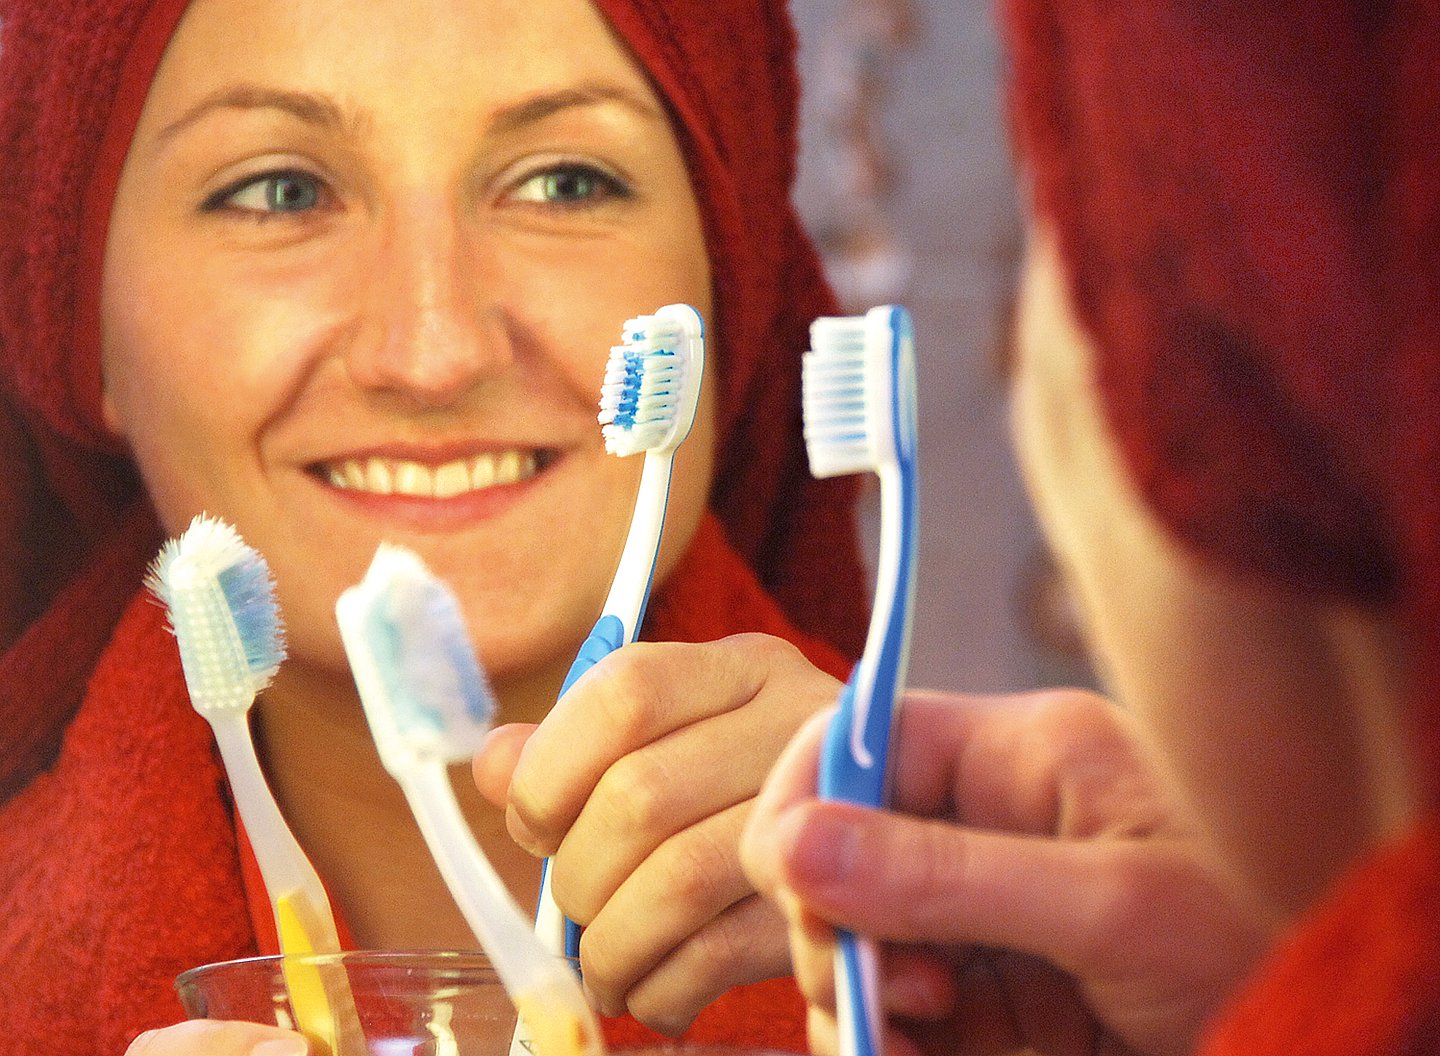 Eine Frau hält lächelnd eine Zahnbürste in der Hand. Mehrere Zahnbürsten sind noch im Bild.